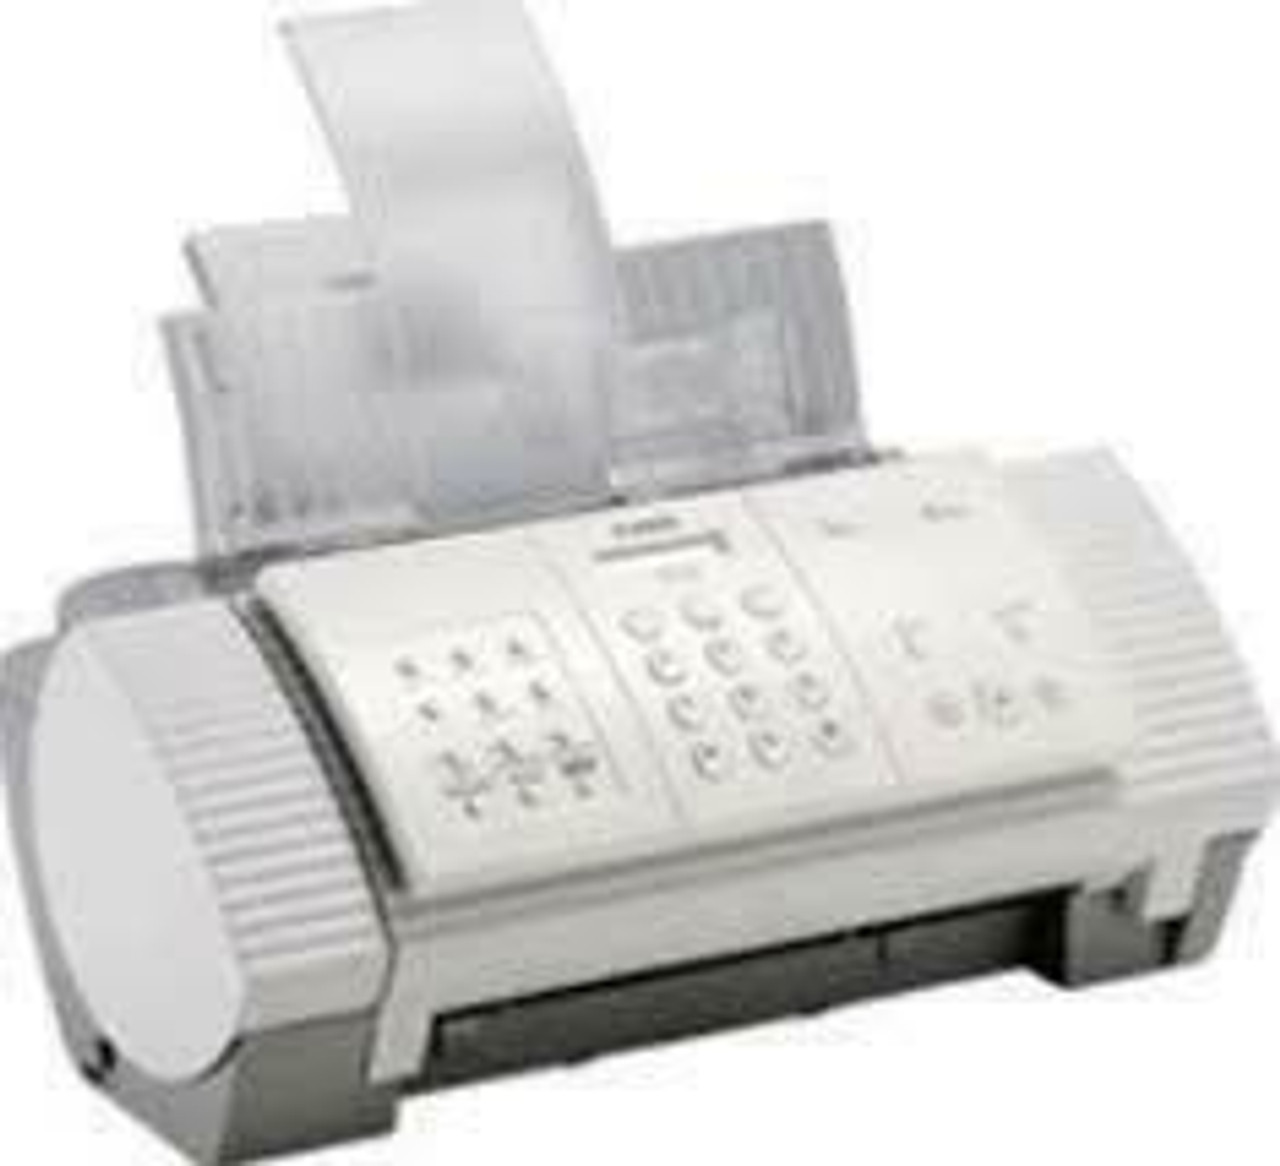 Canon Fax B340